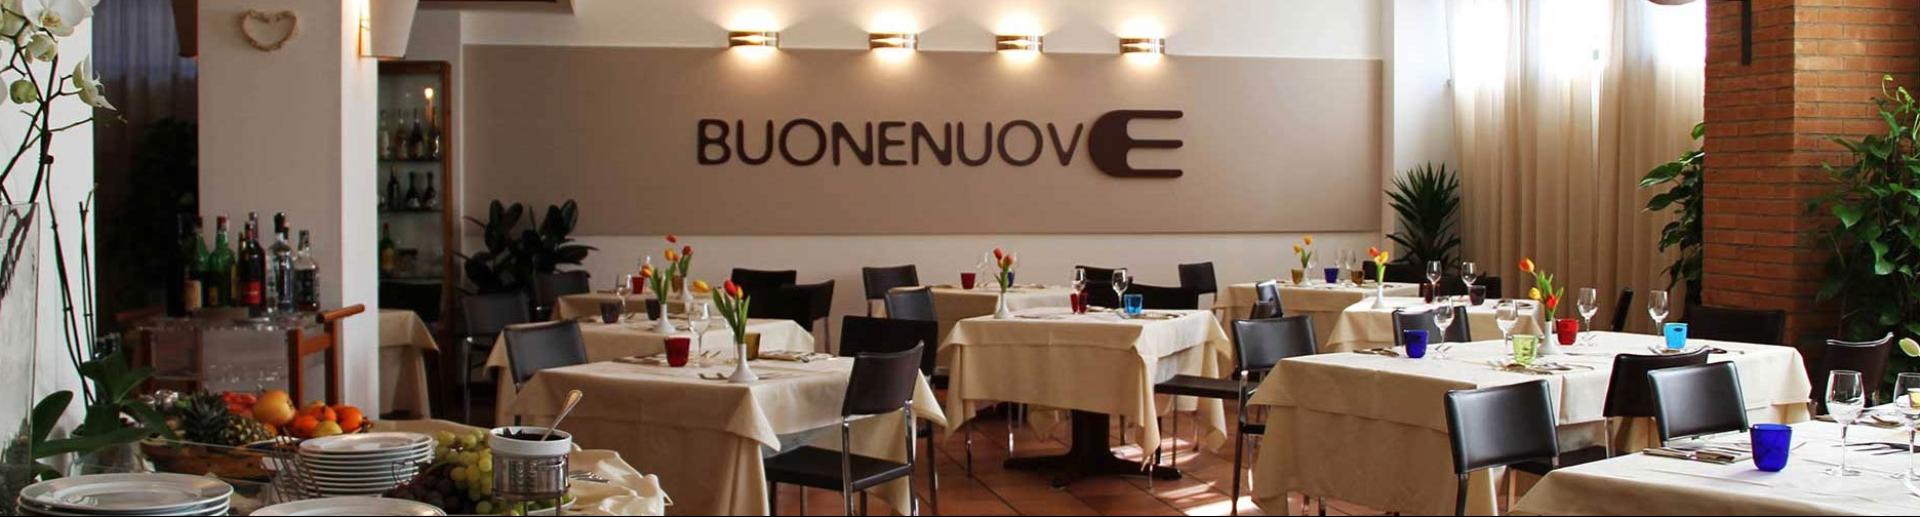 chocohotel en restaurant-buonenuove-perugia 013